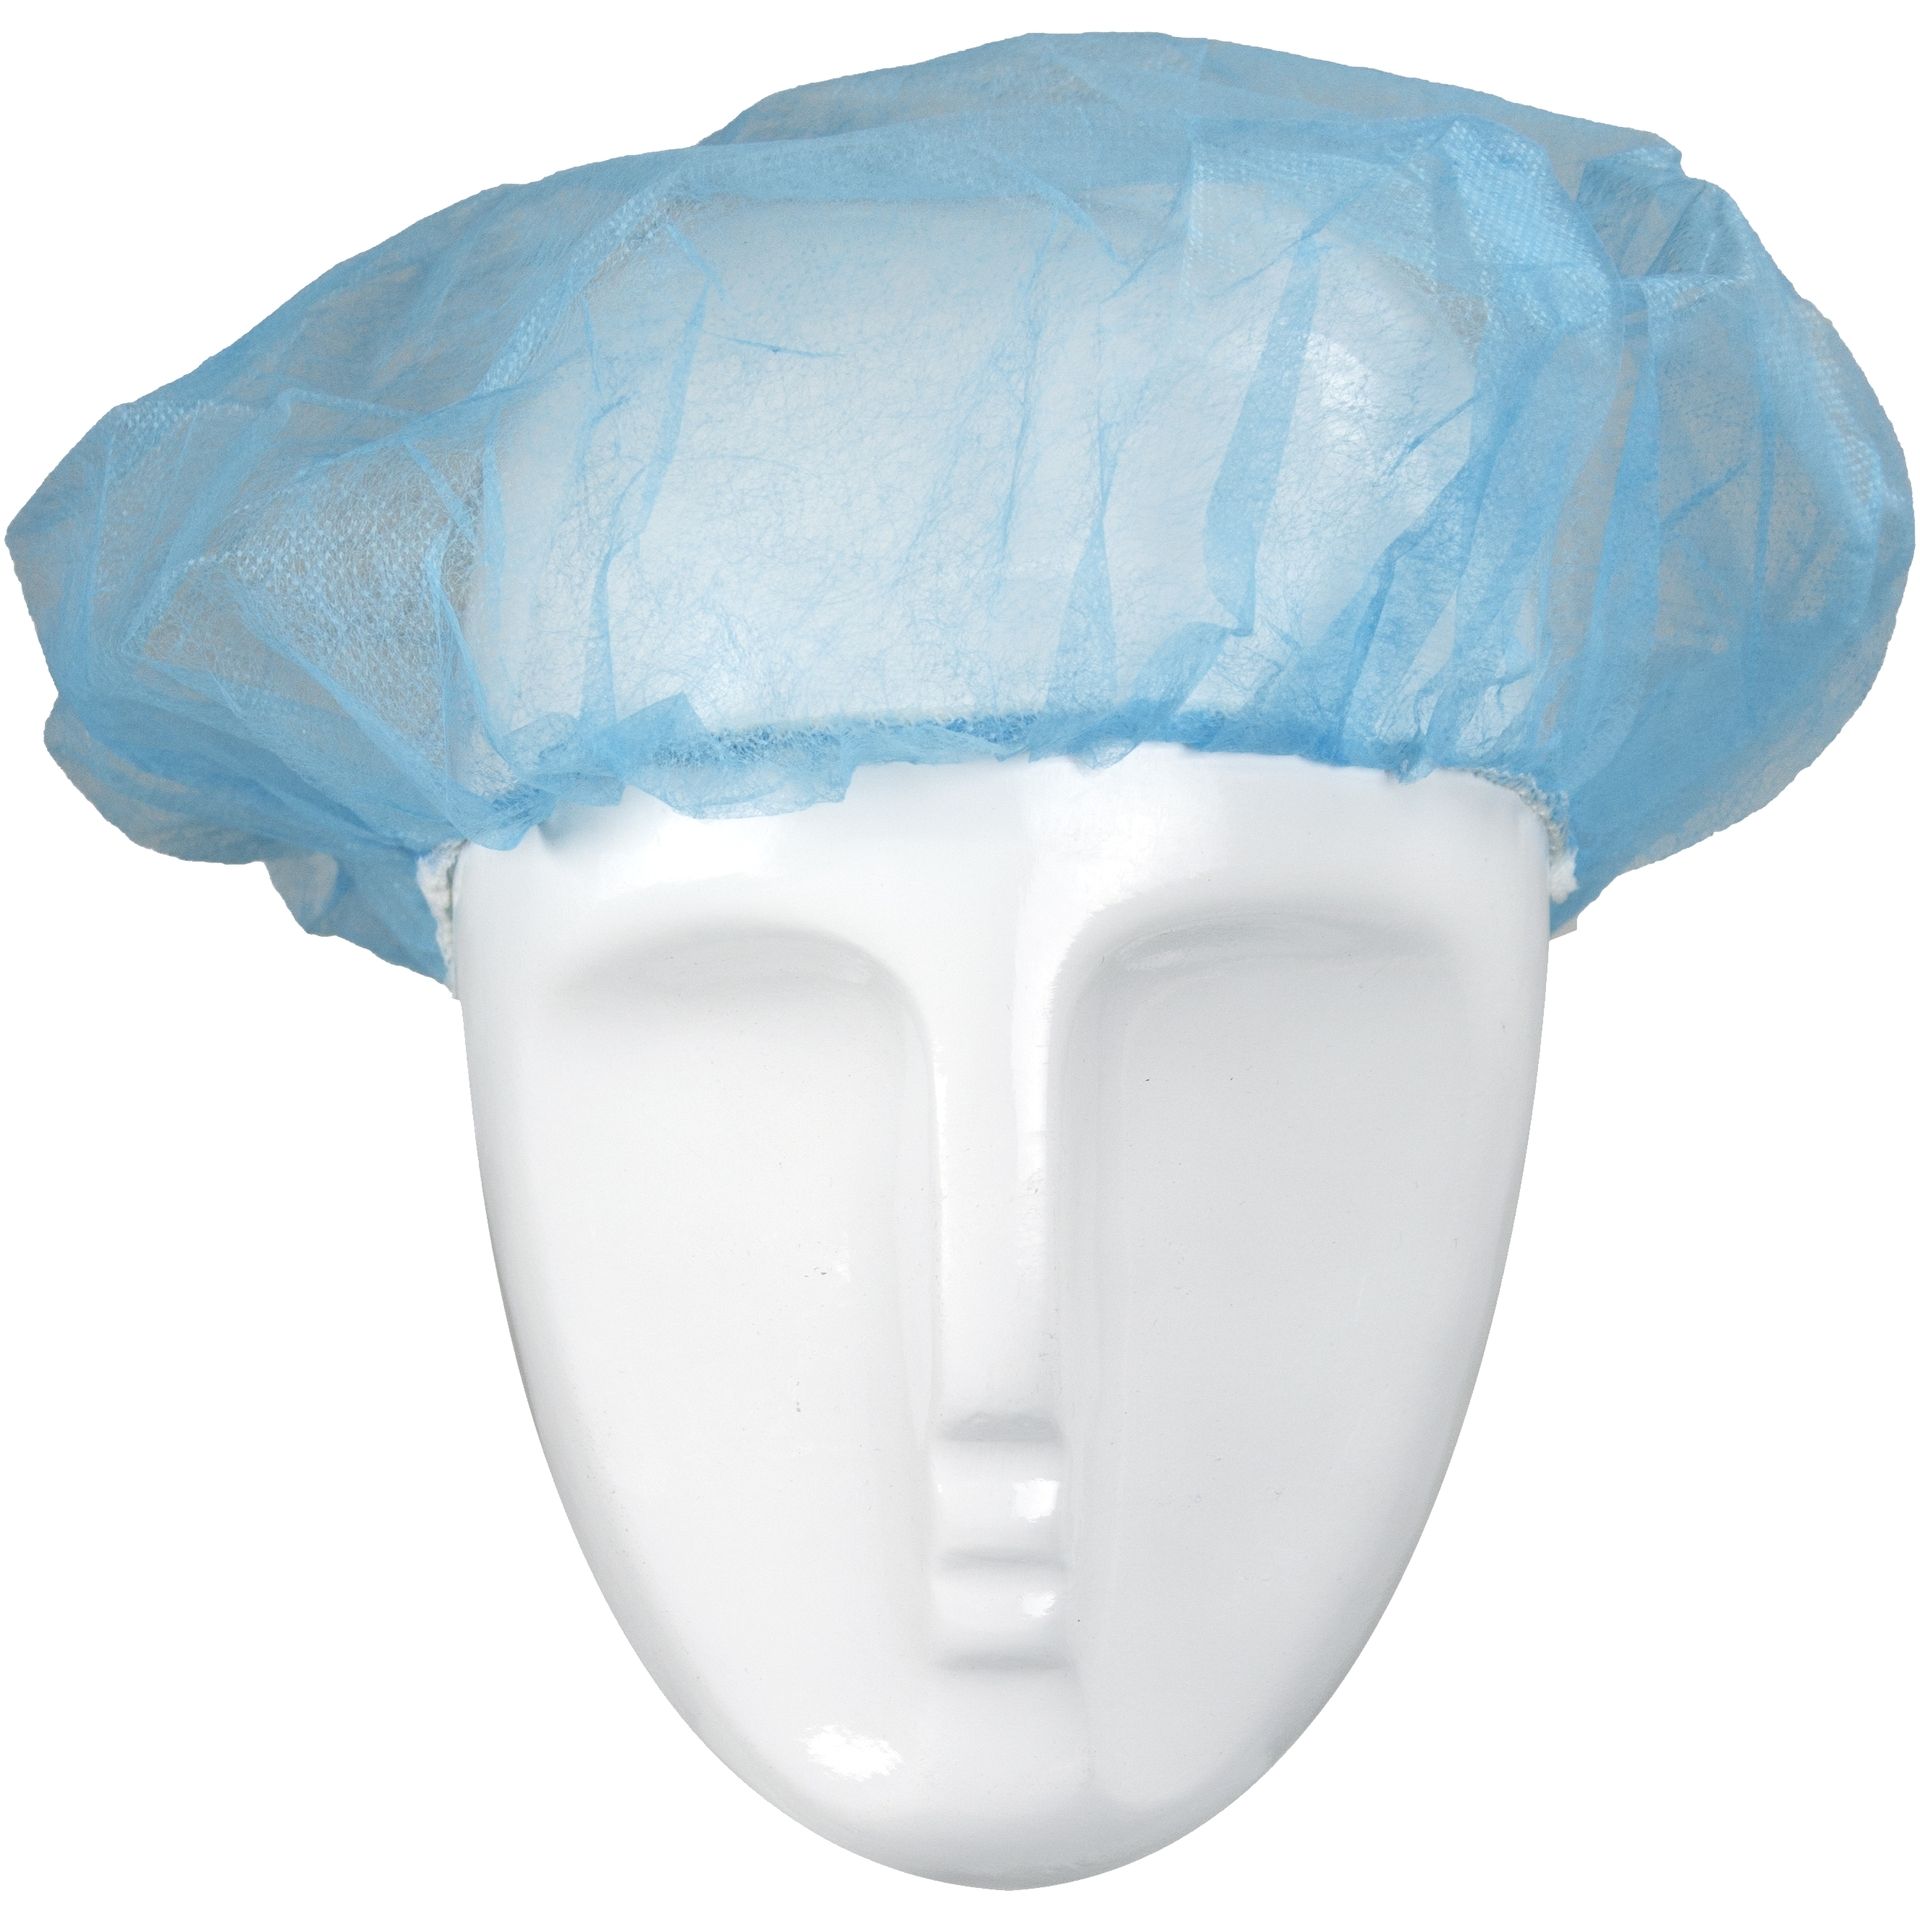 ASATEX-Hygiene, Einweg-Kopfhaube Barettform H52B, blau, VE = 10 Pkg. á 100 Stk.